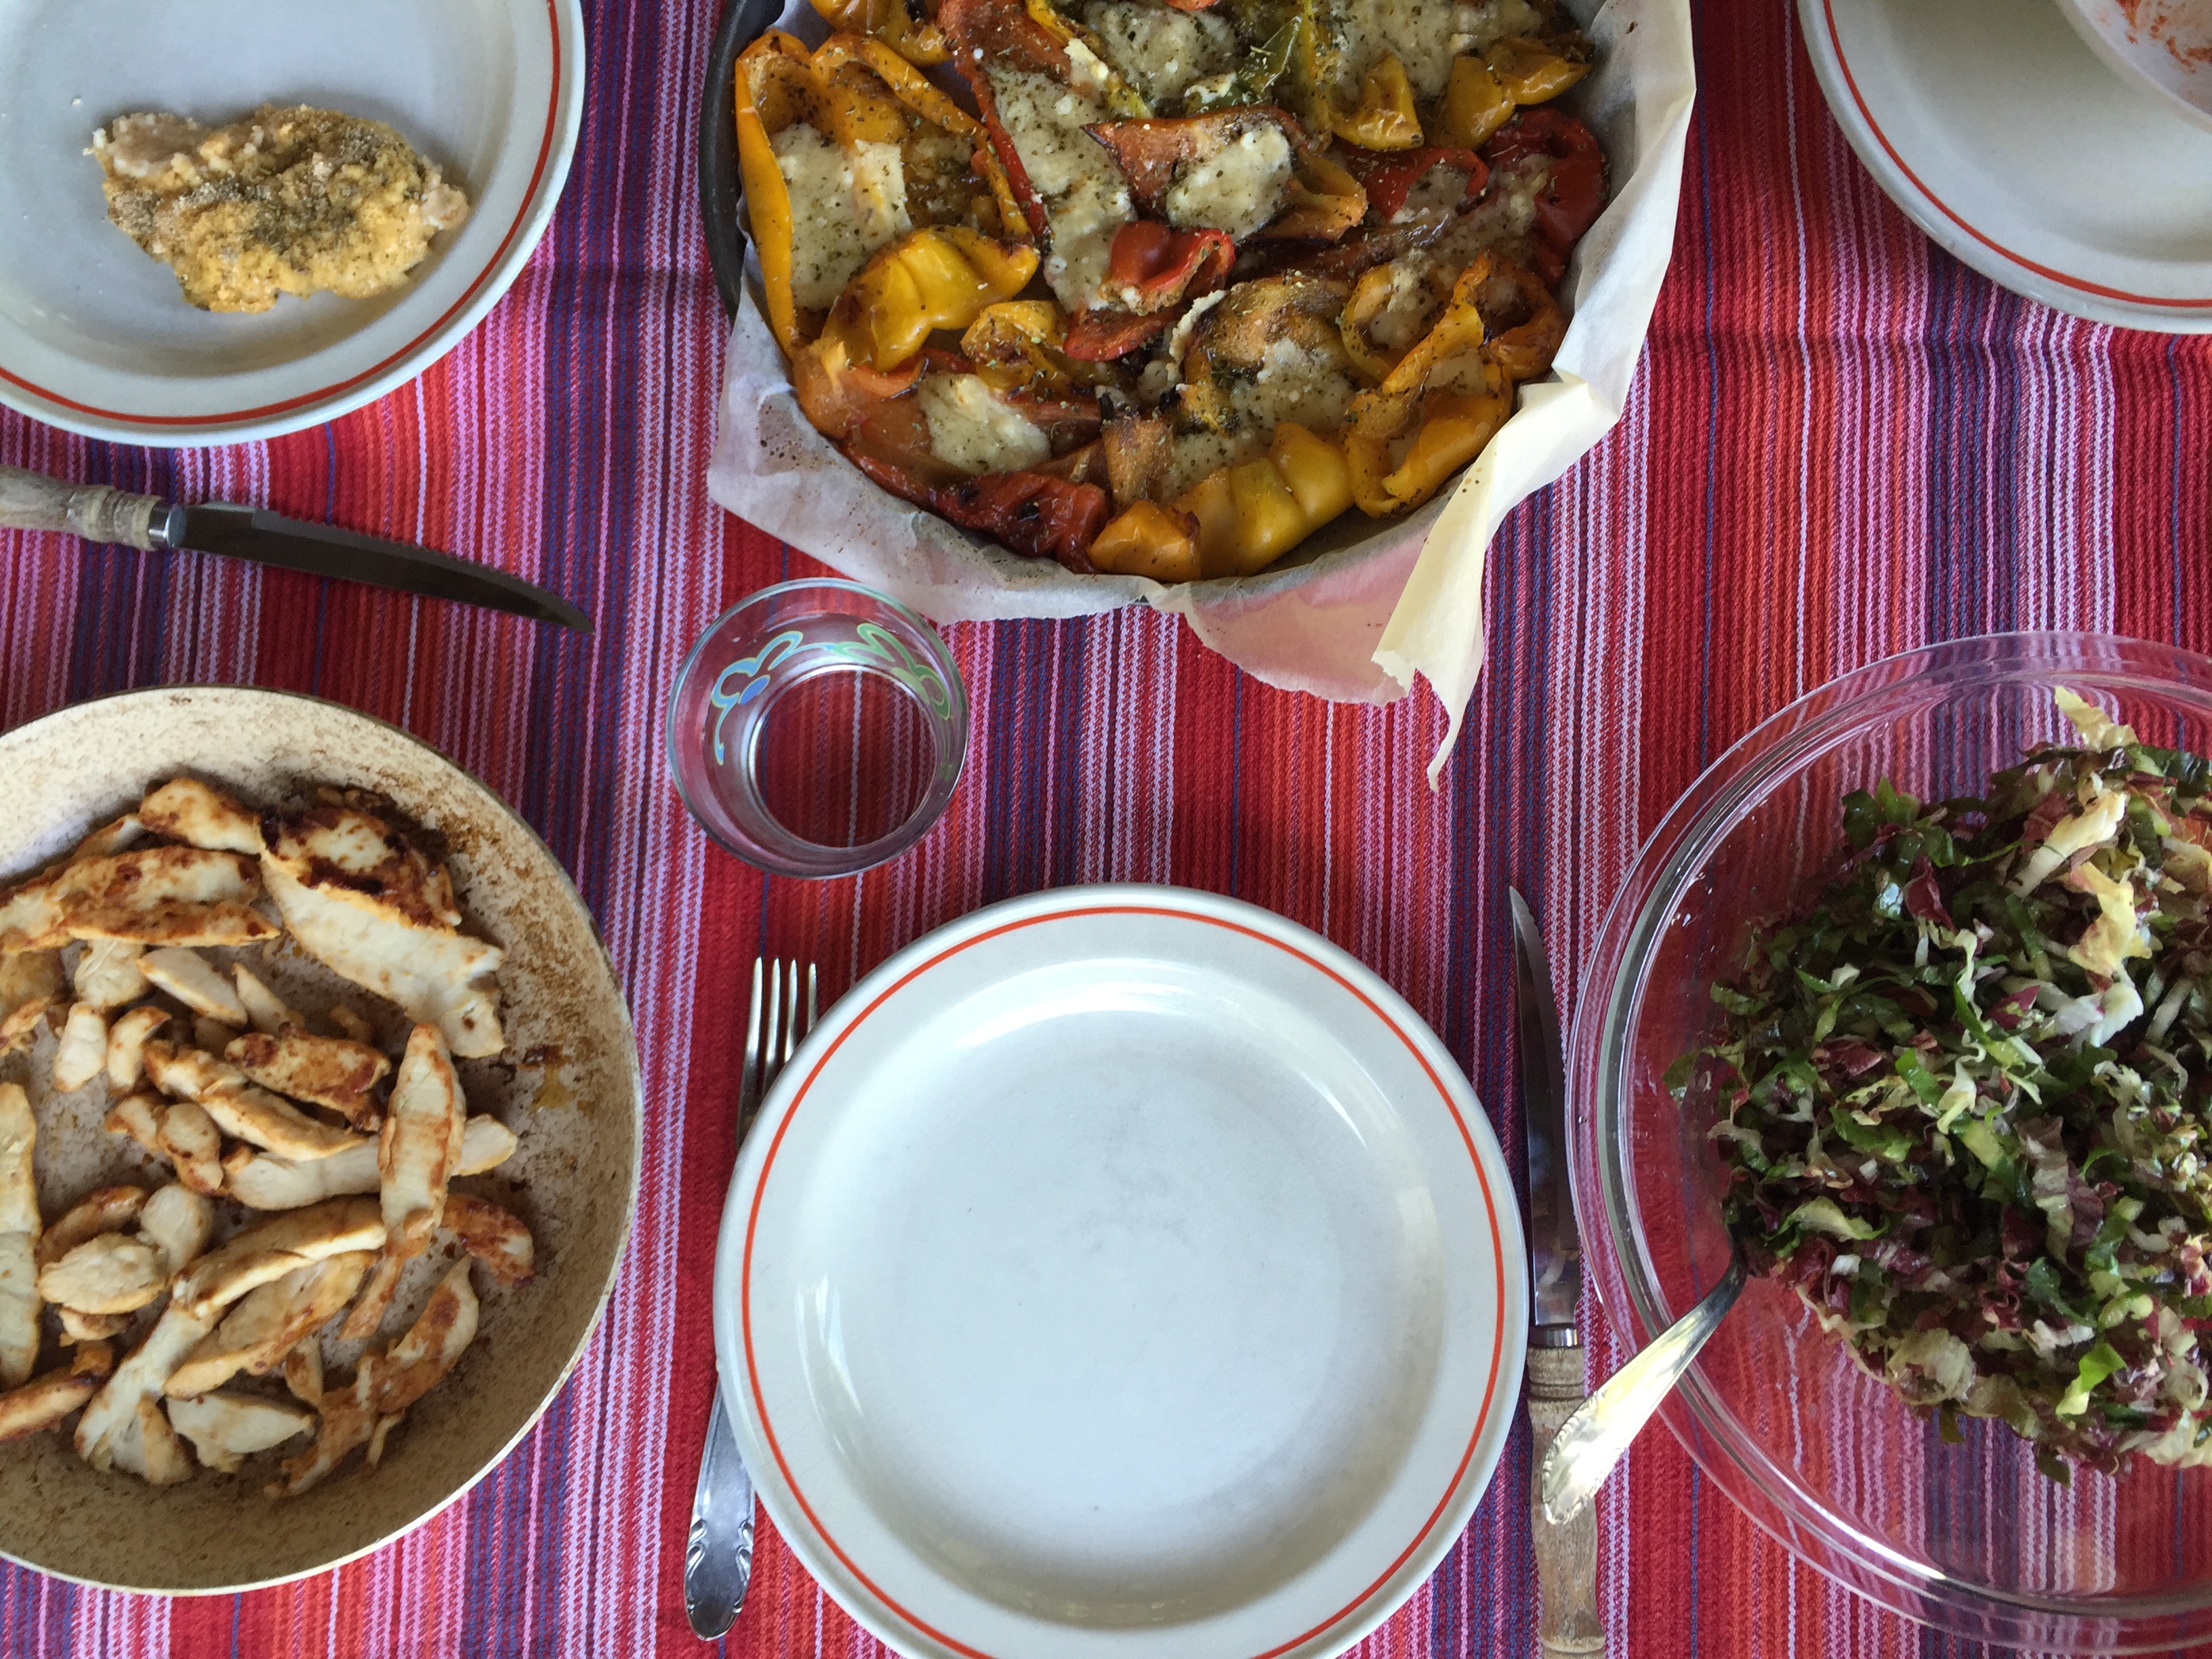 Pranzo estivo: peperoni al forno, insalata e pollo saltato in padella